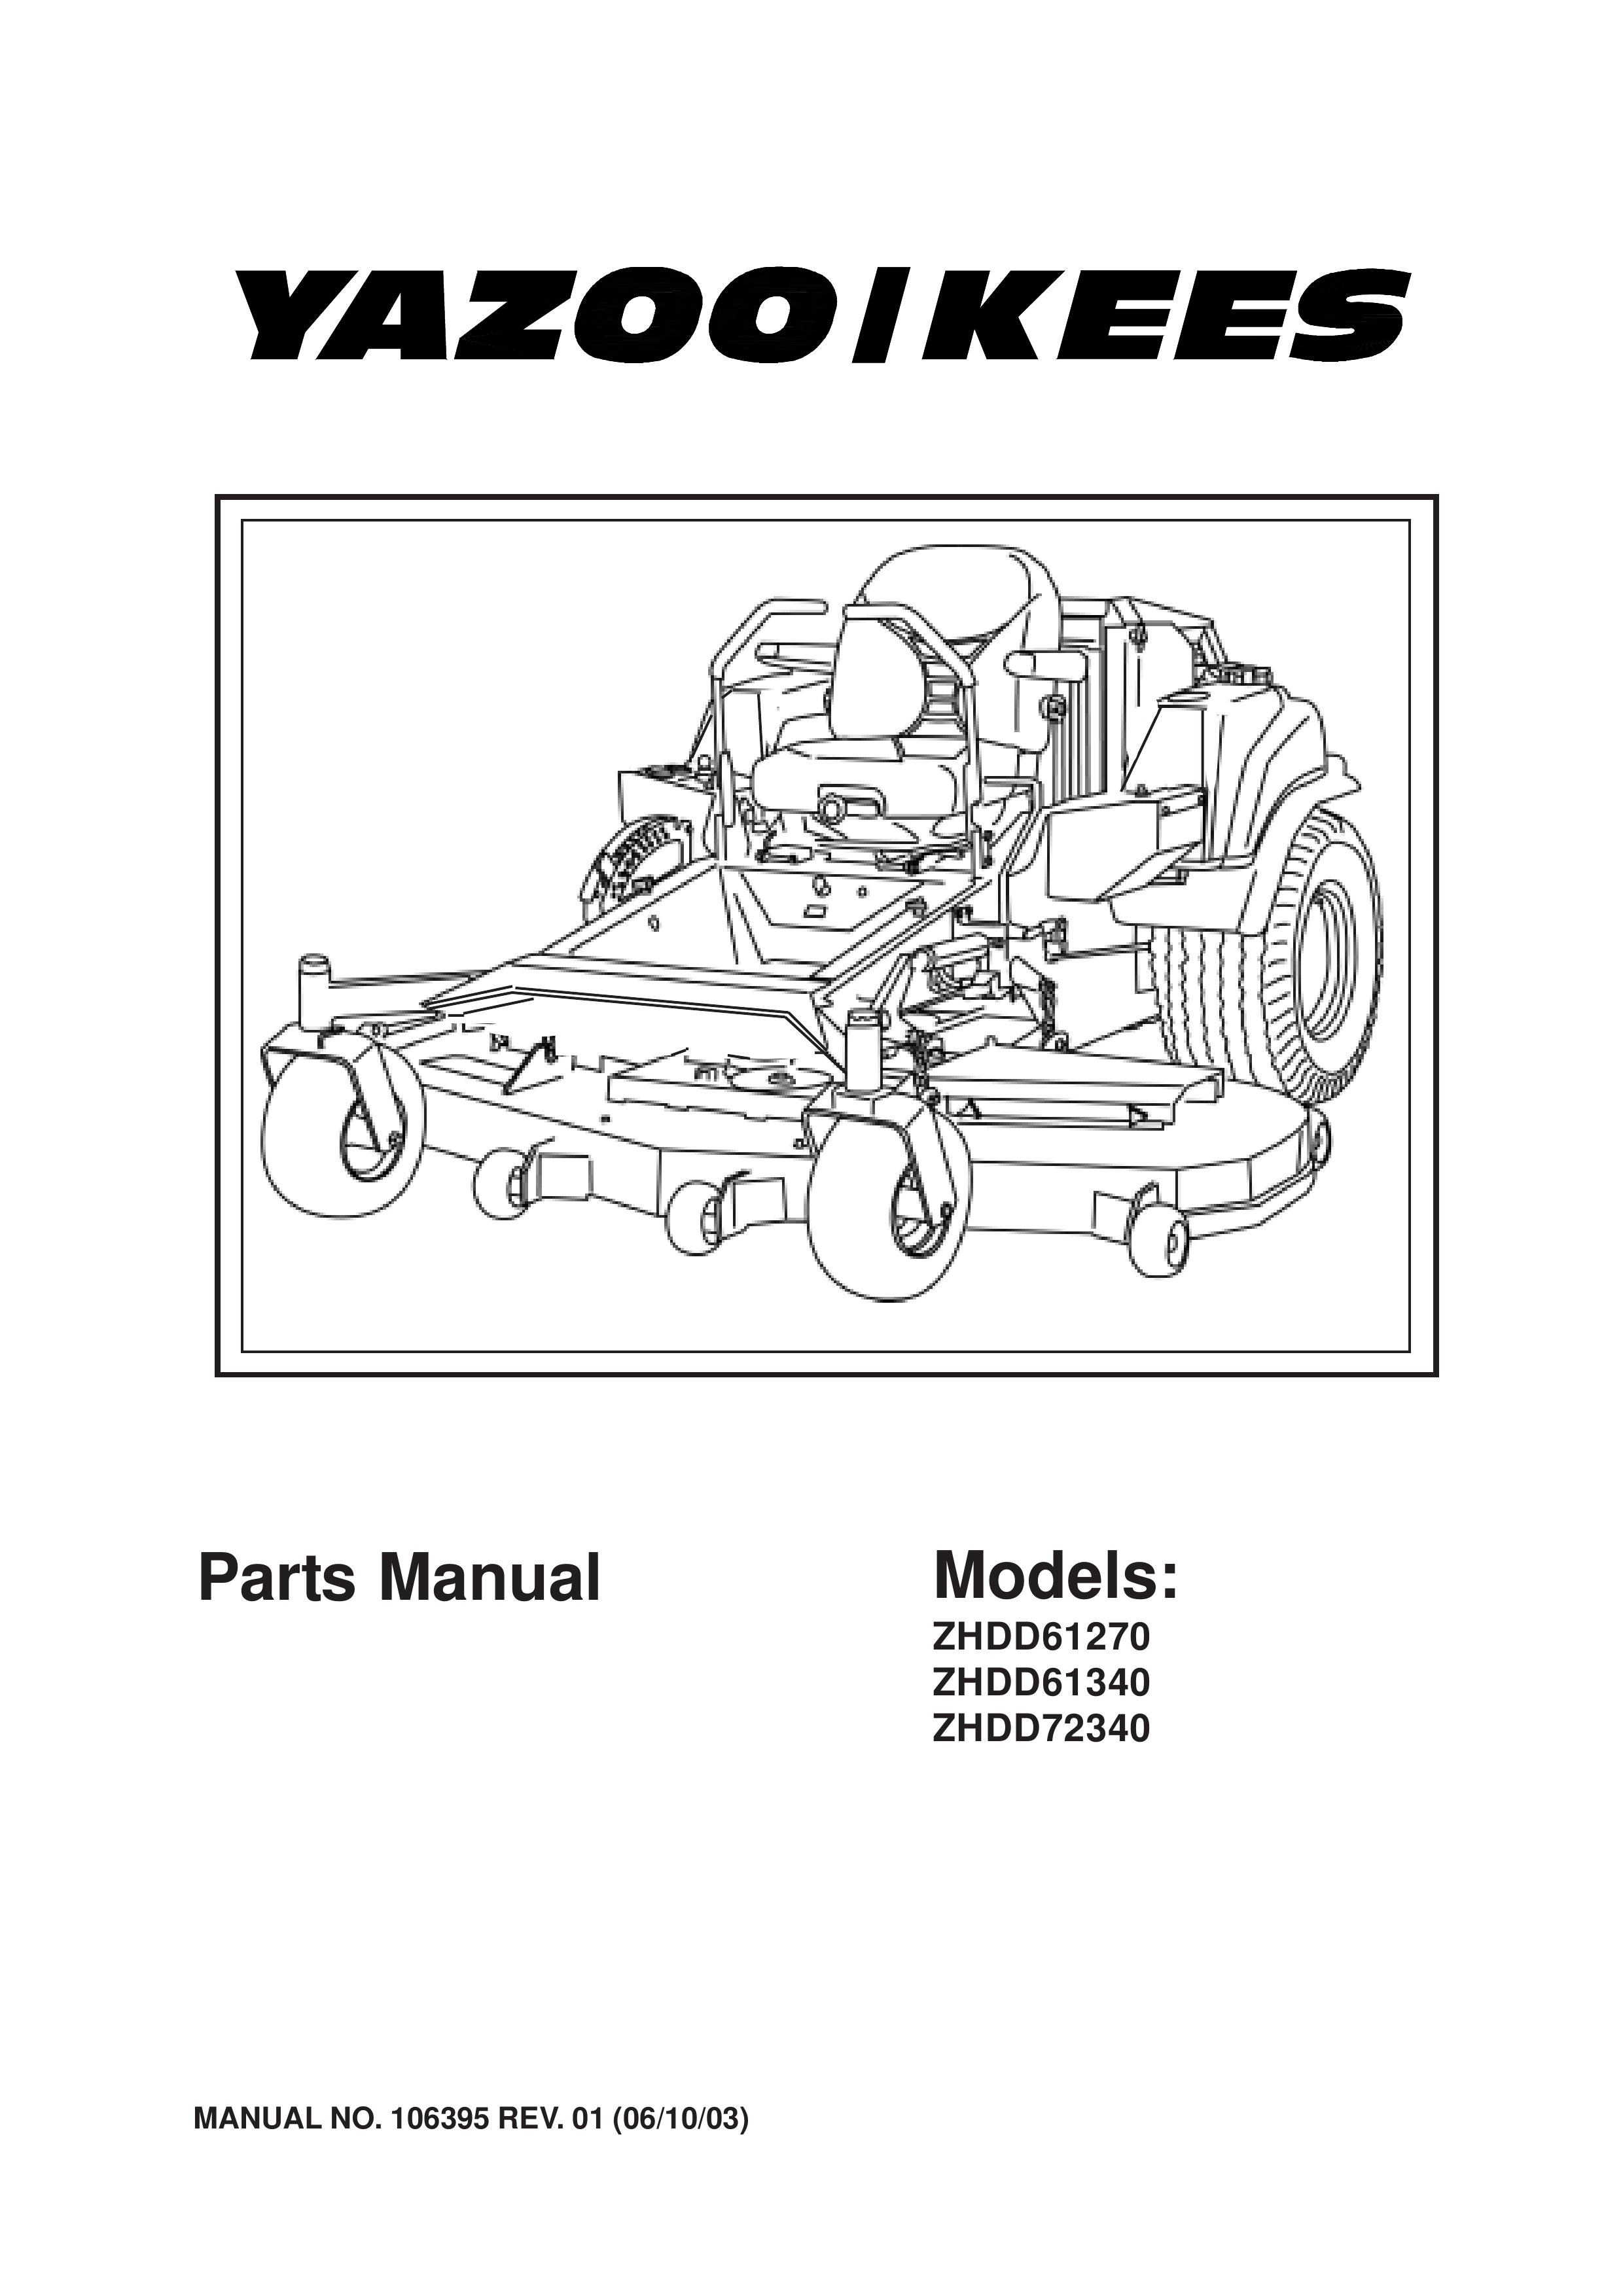 Yazoo/Kees 4HRK20 Lawn Mower User Manual